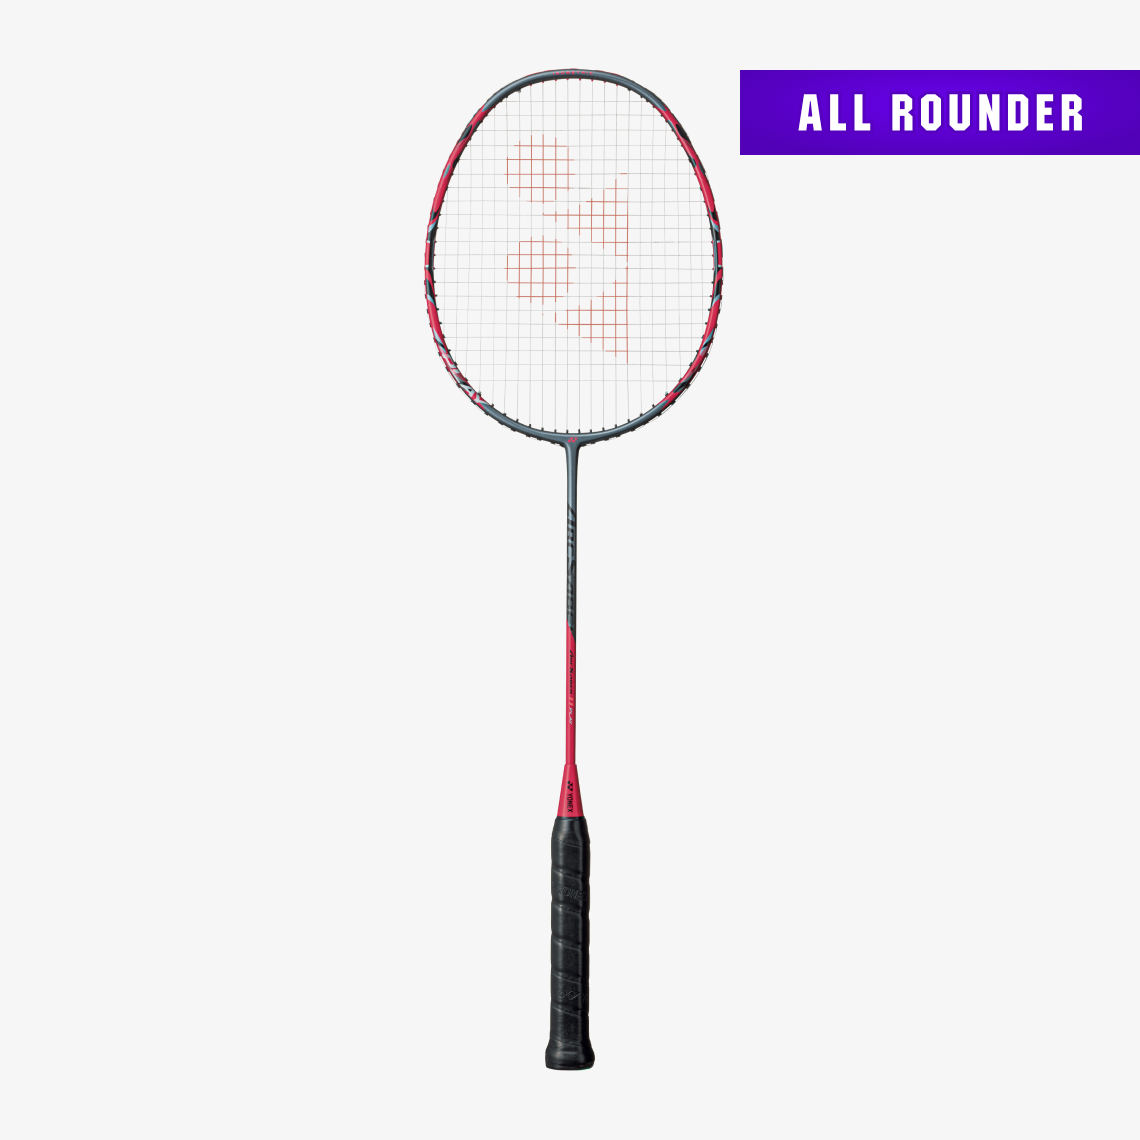 YONEX Arcsaber 11 Play Badminton Racket